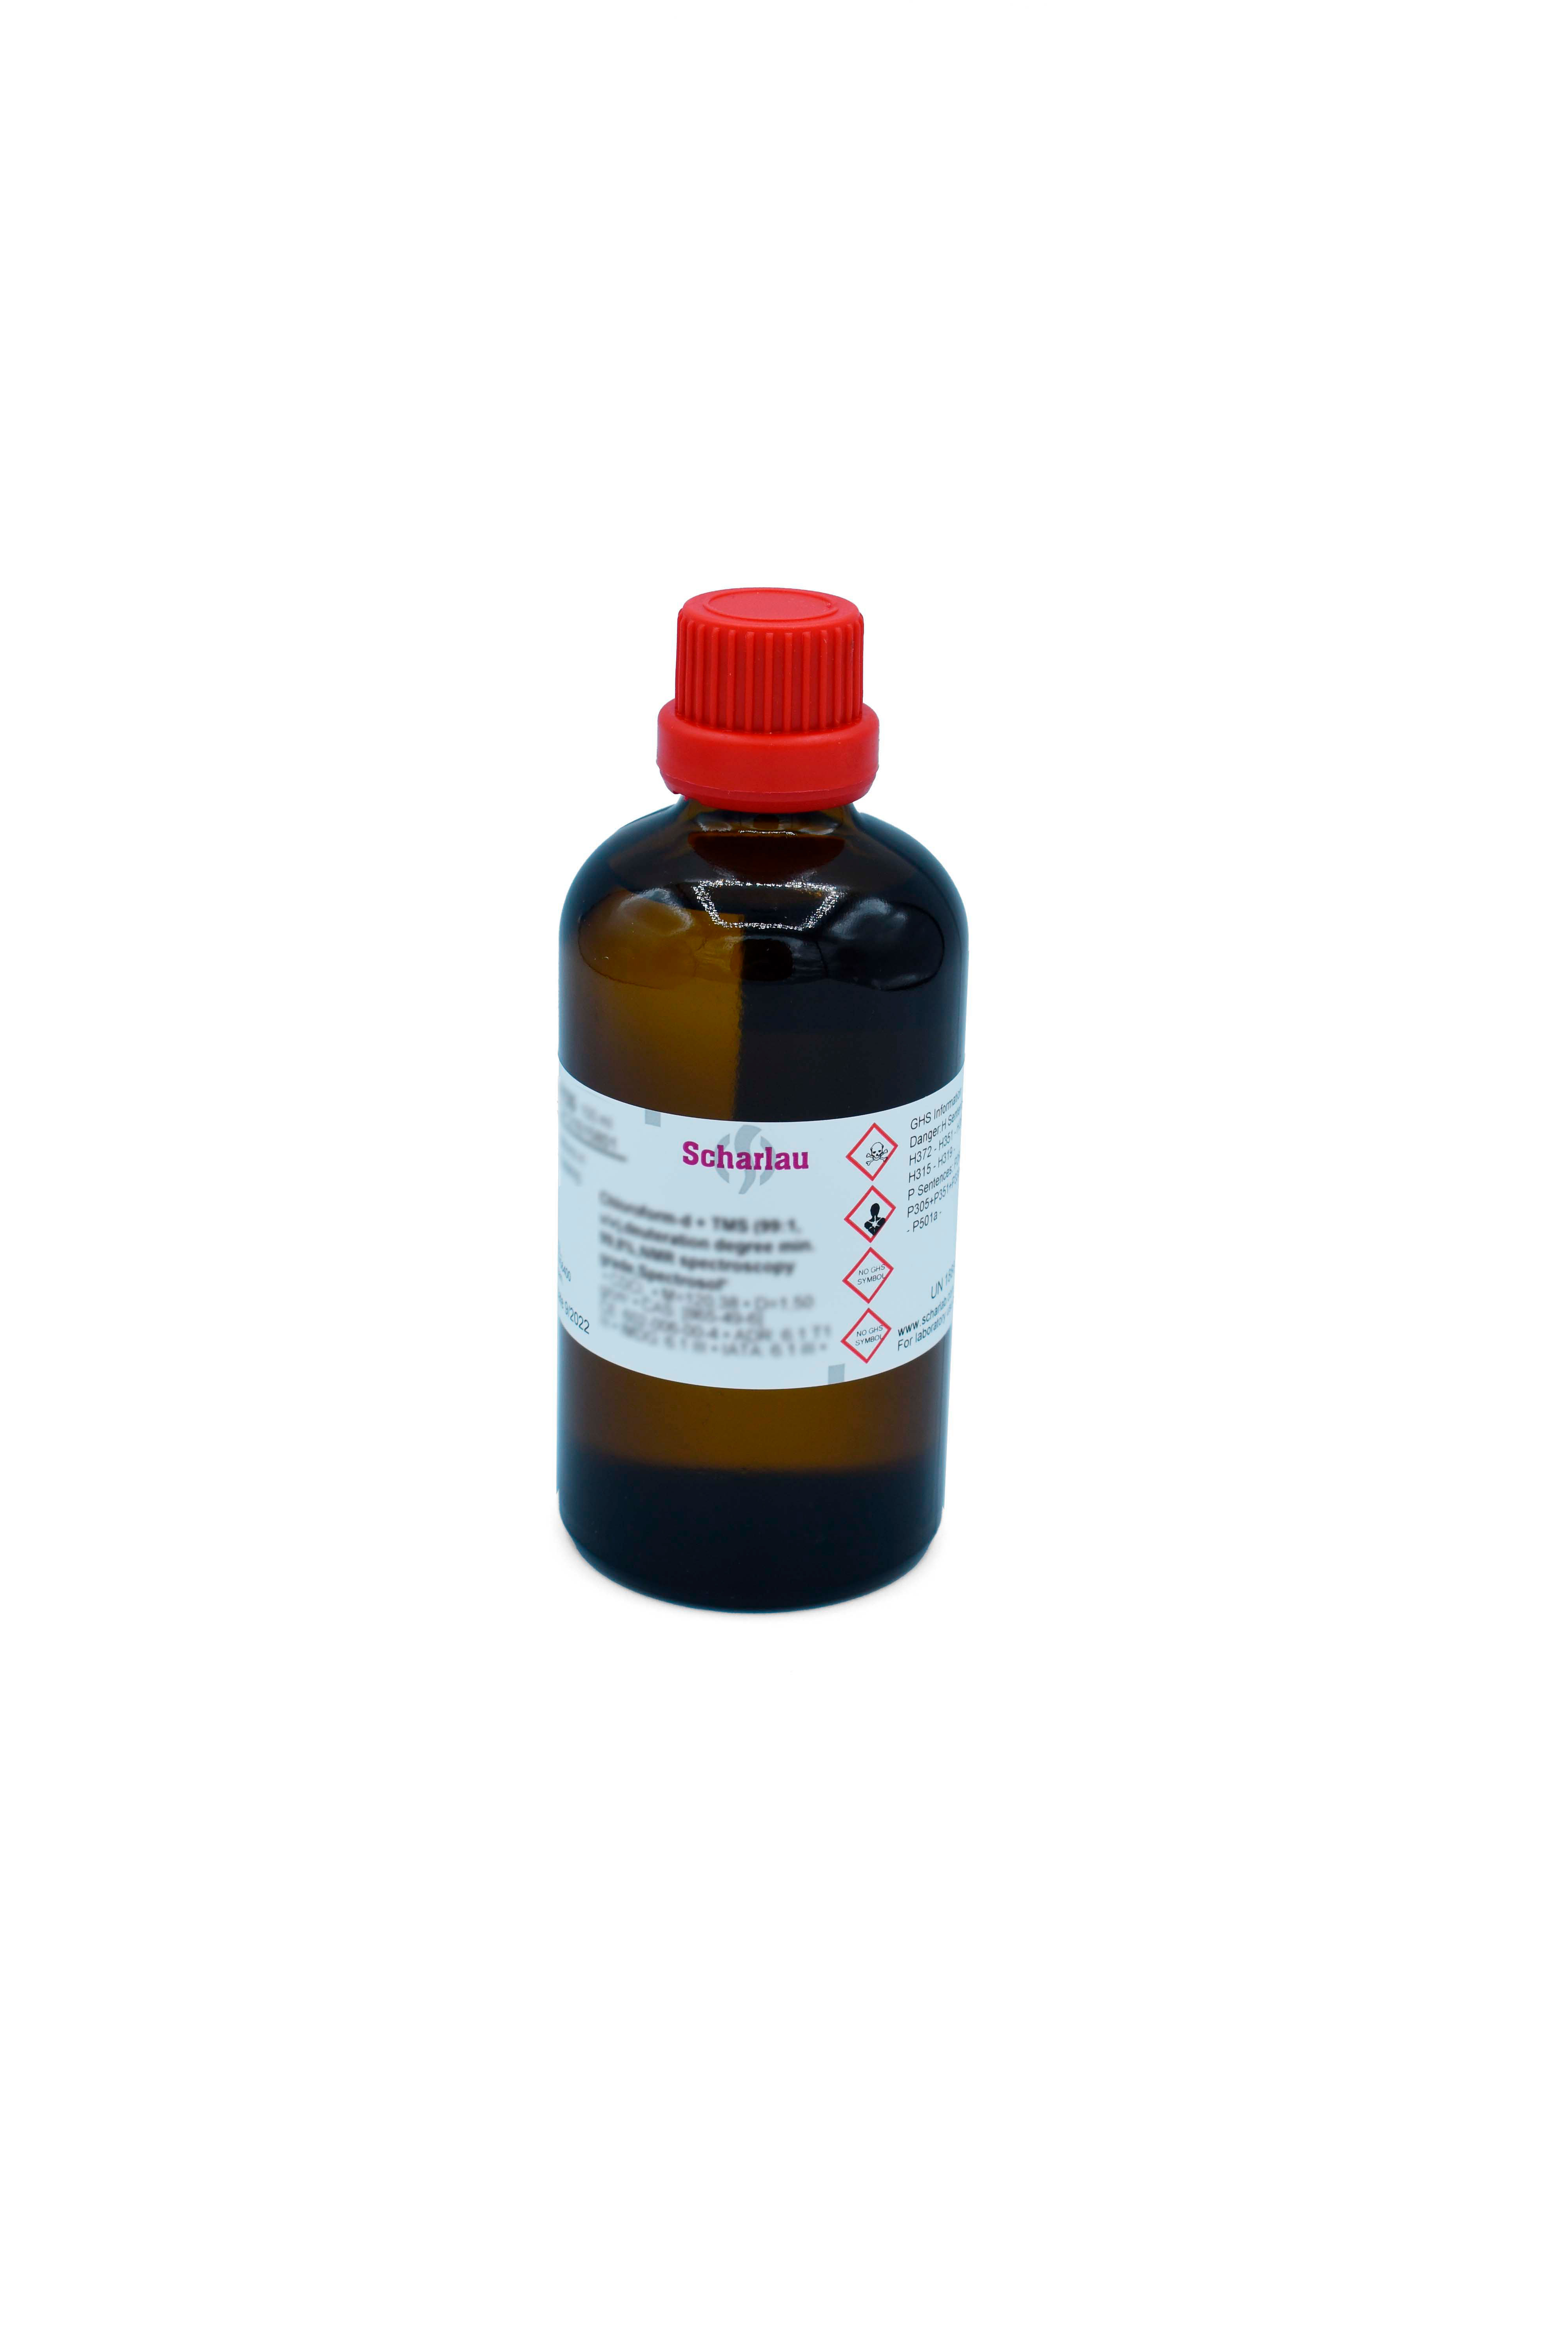 Piridina-d5, grado de deuteración mín. 99,95%, para espectroscopía RMN, Spectrosol®